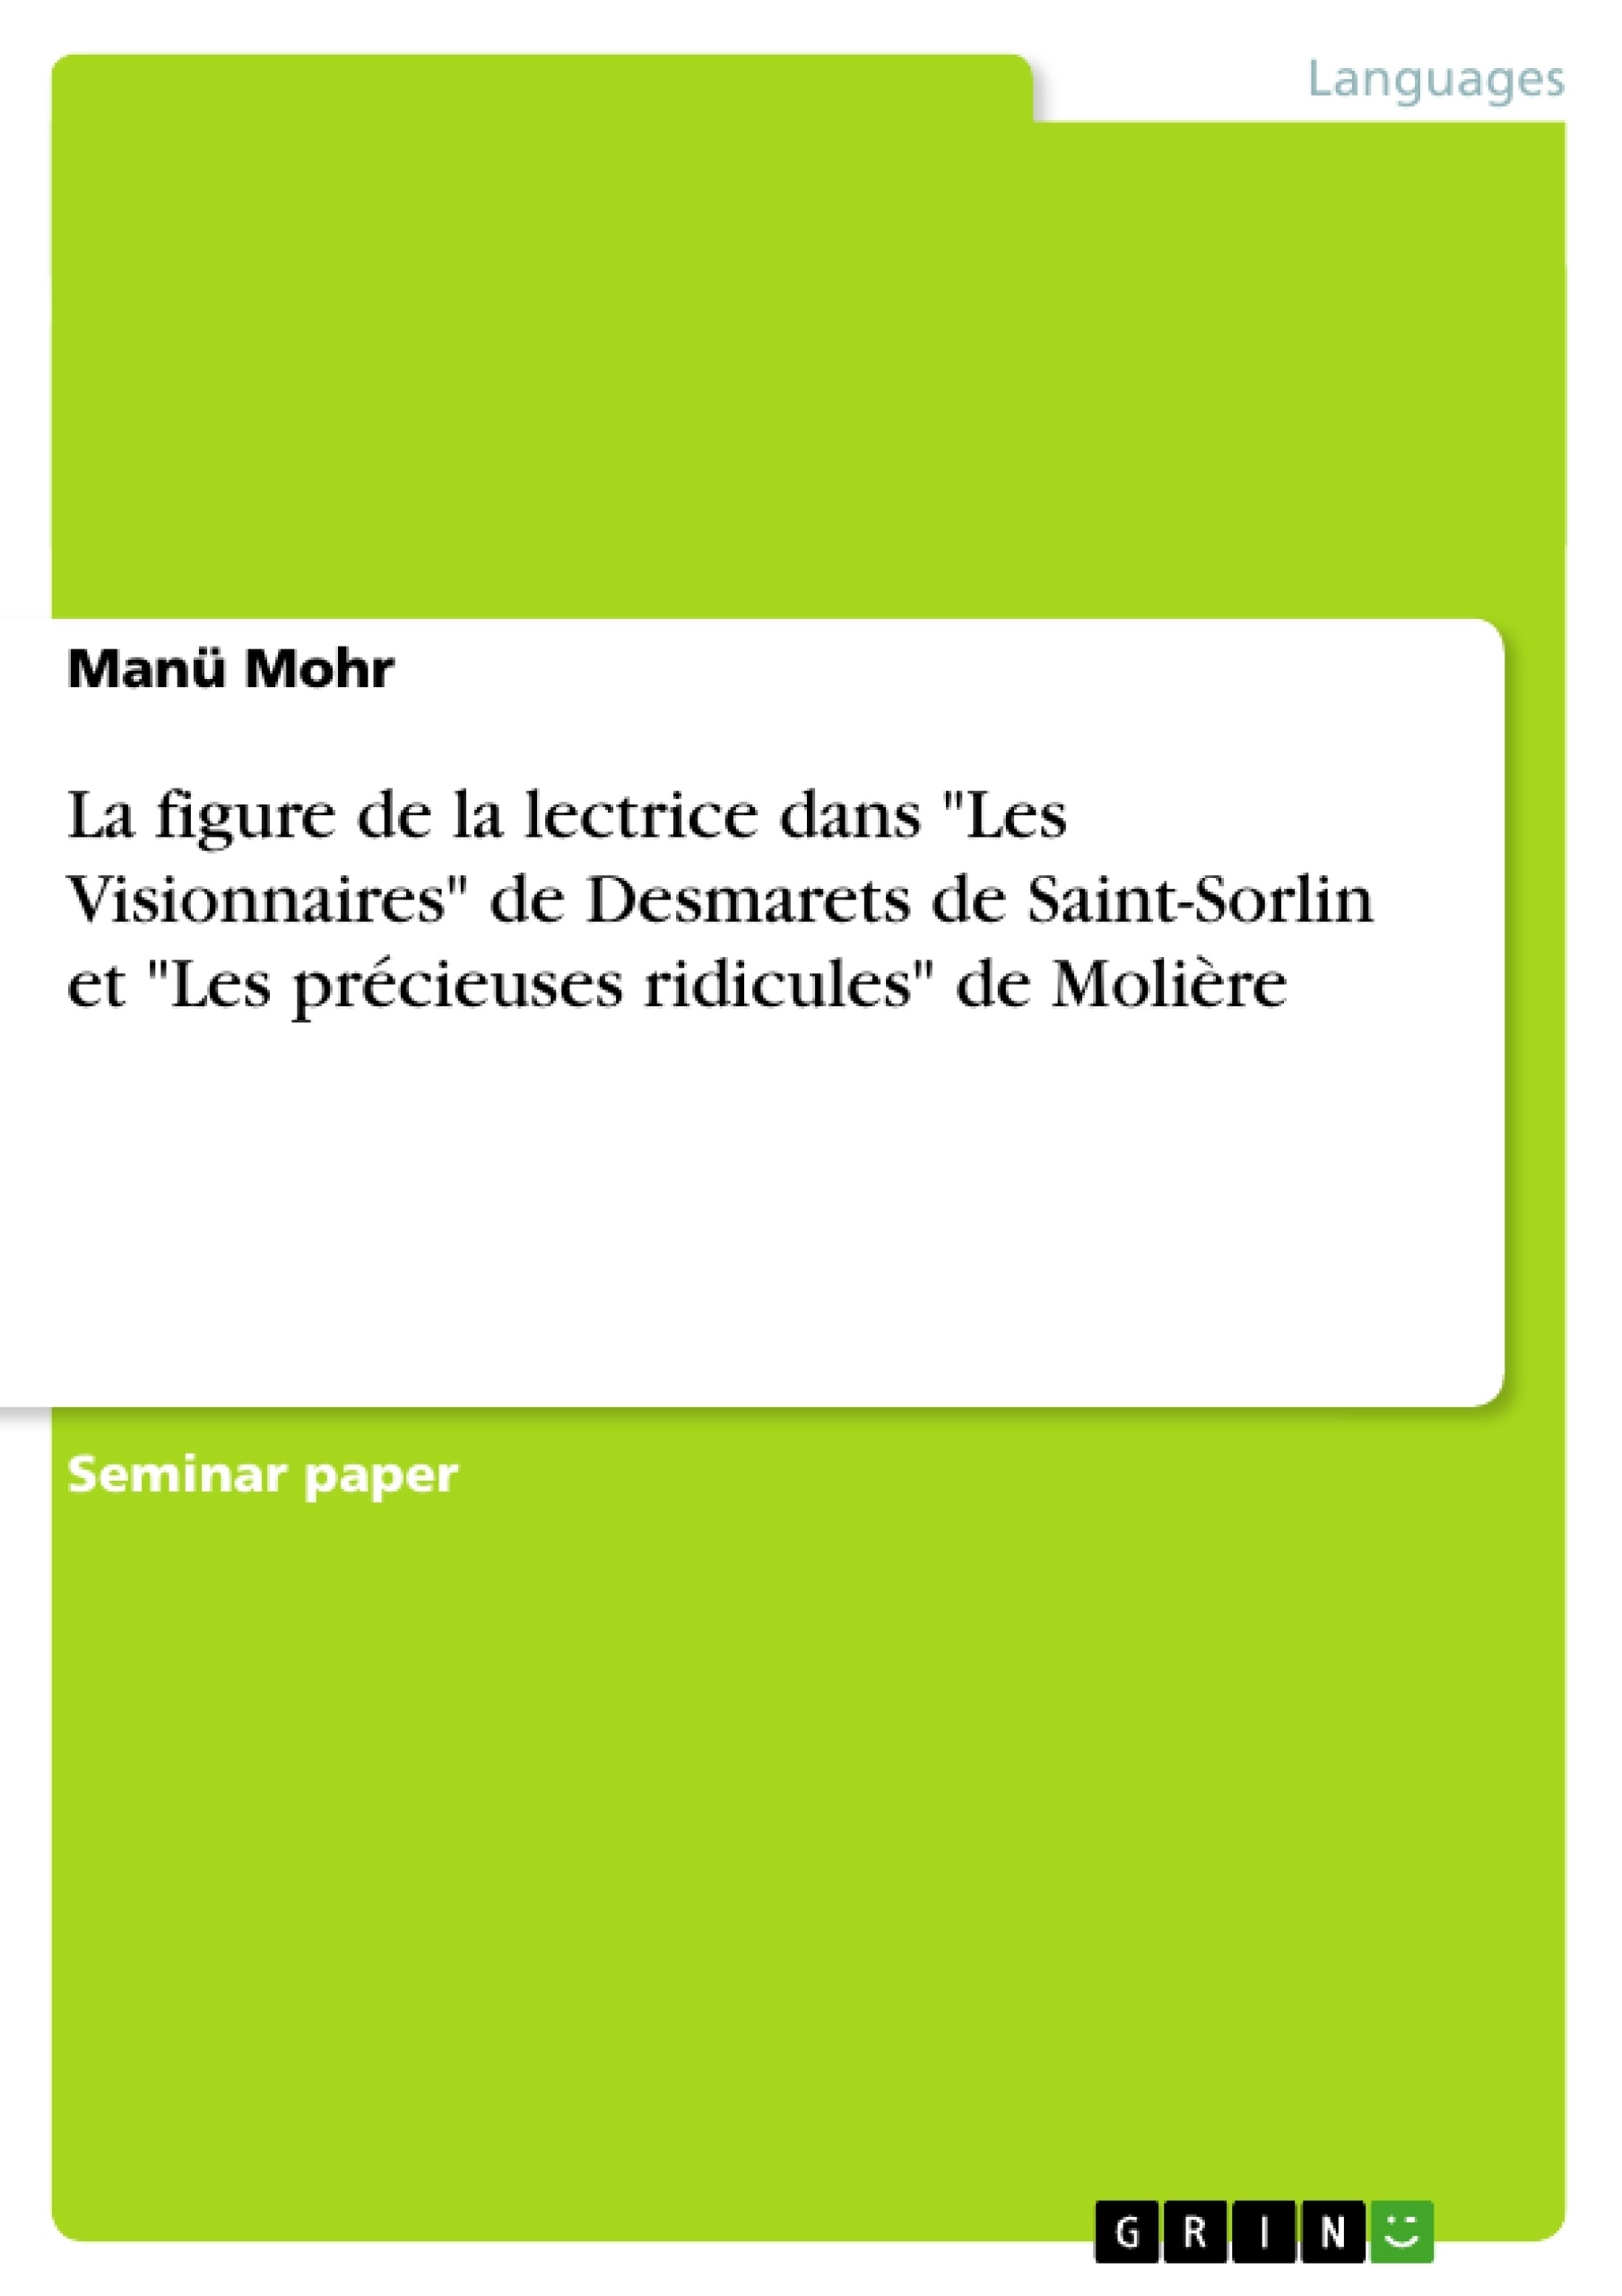 Titre: La figure de la lectrice dans "Les Visionnaires" de Desmarets de Saint-Sorlin et "Les précieuses ridicules" de Molière